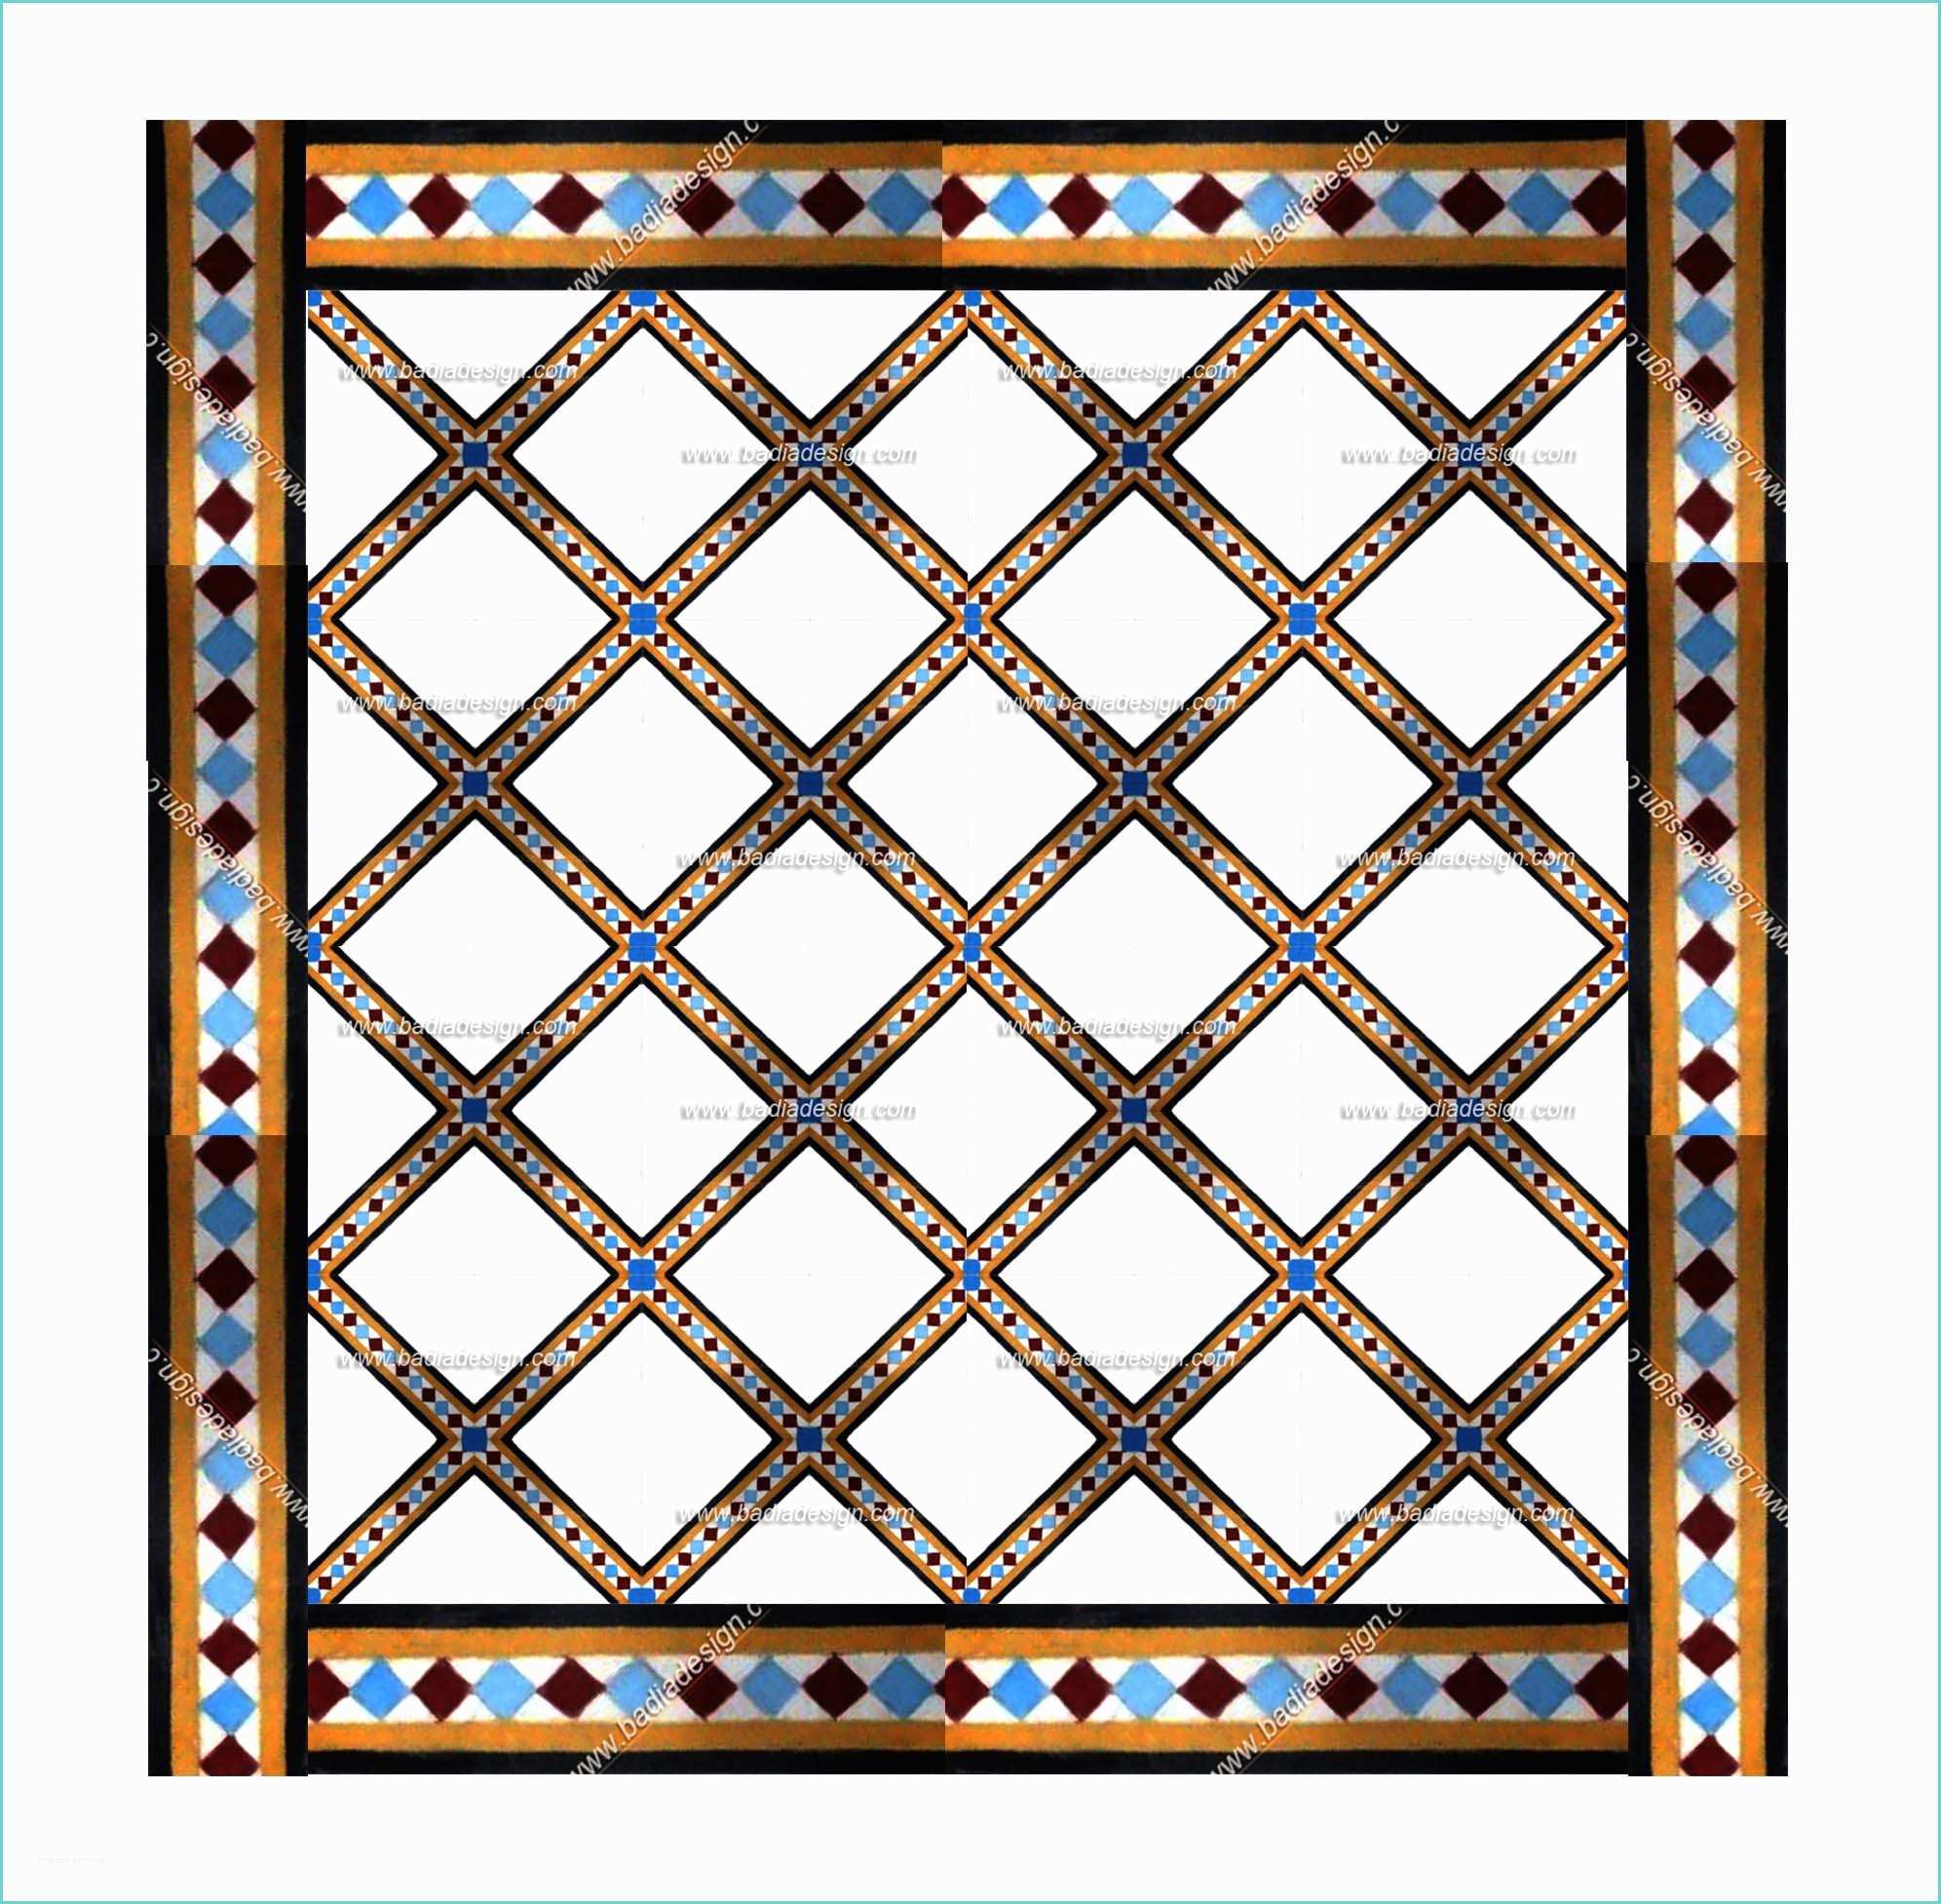 Morroccan Floor Tiles Moroccan Tile Design Ideas Los Angeles